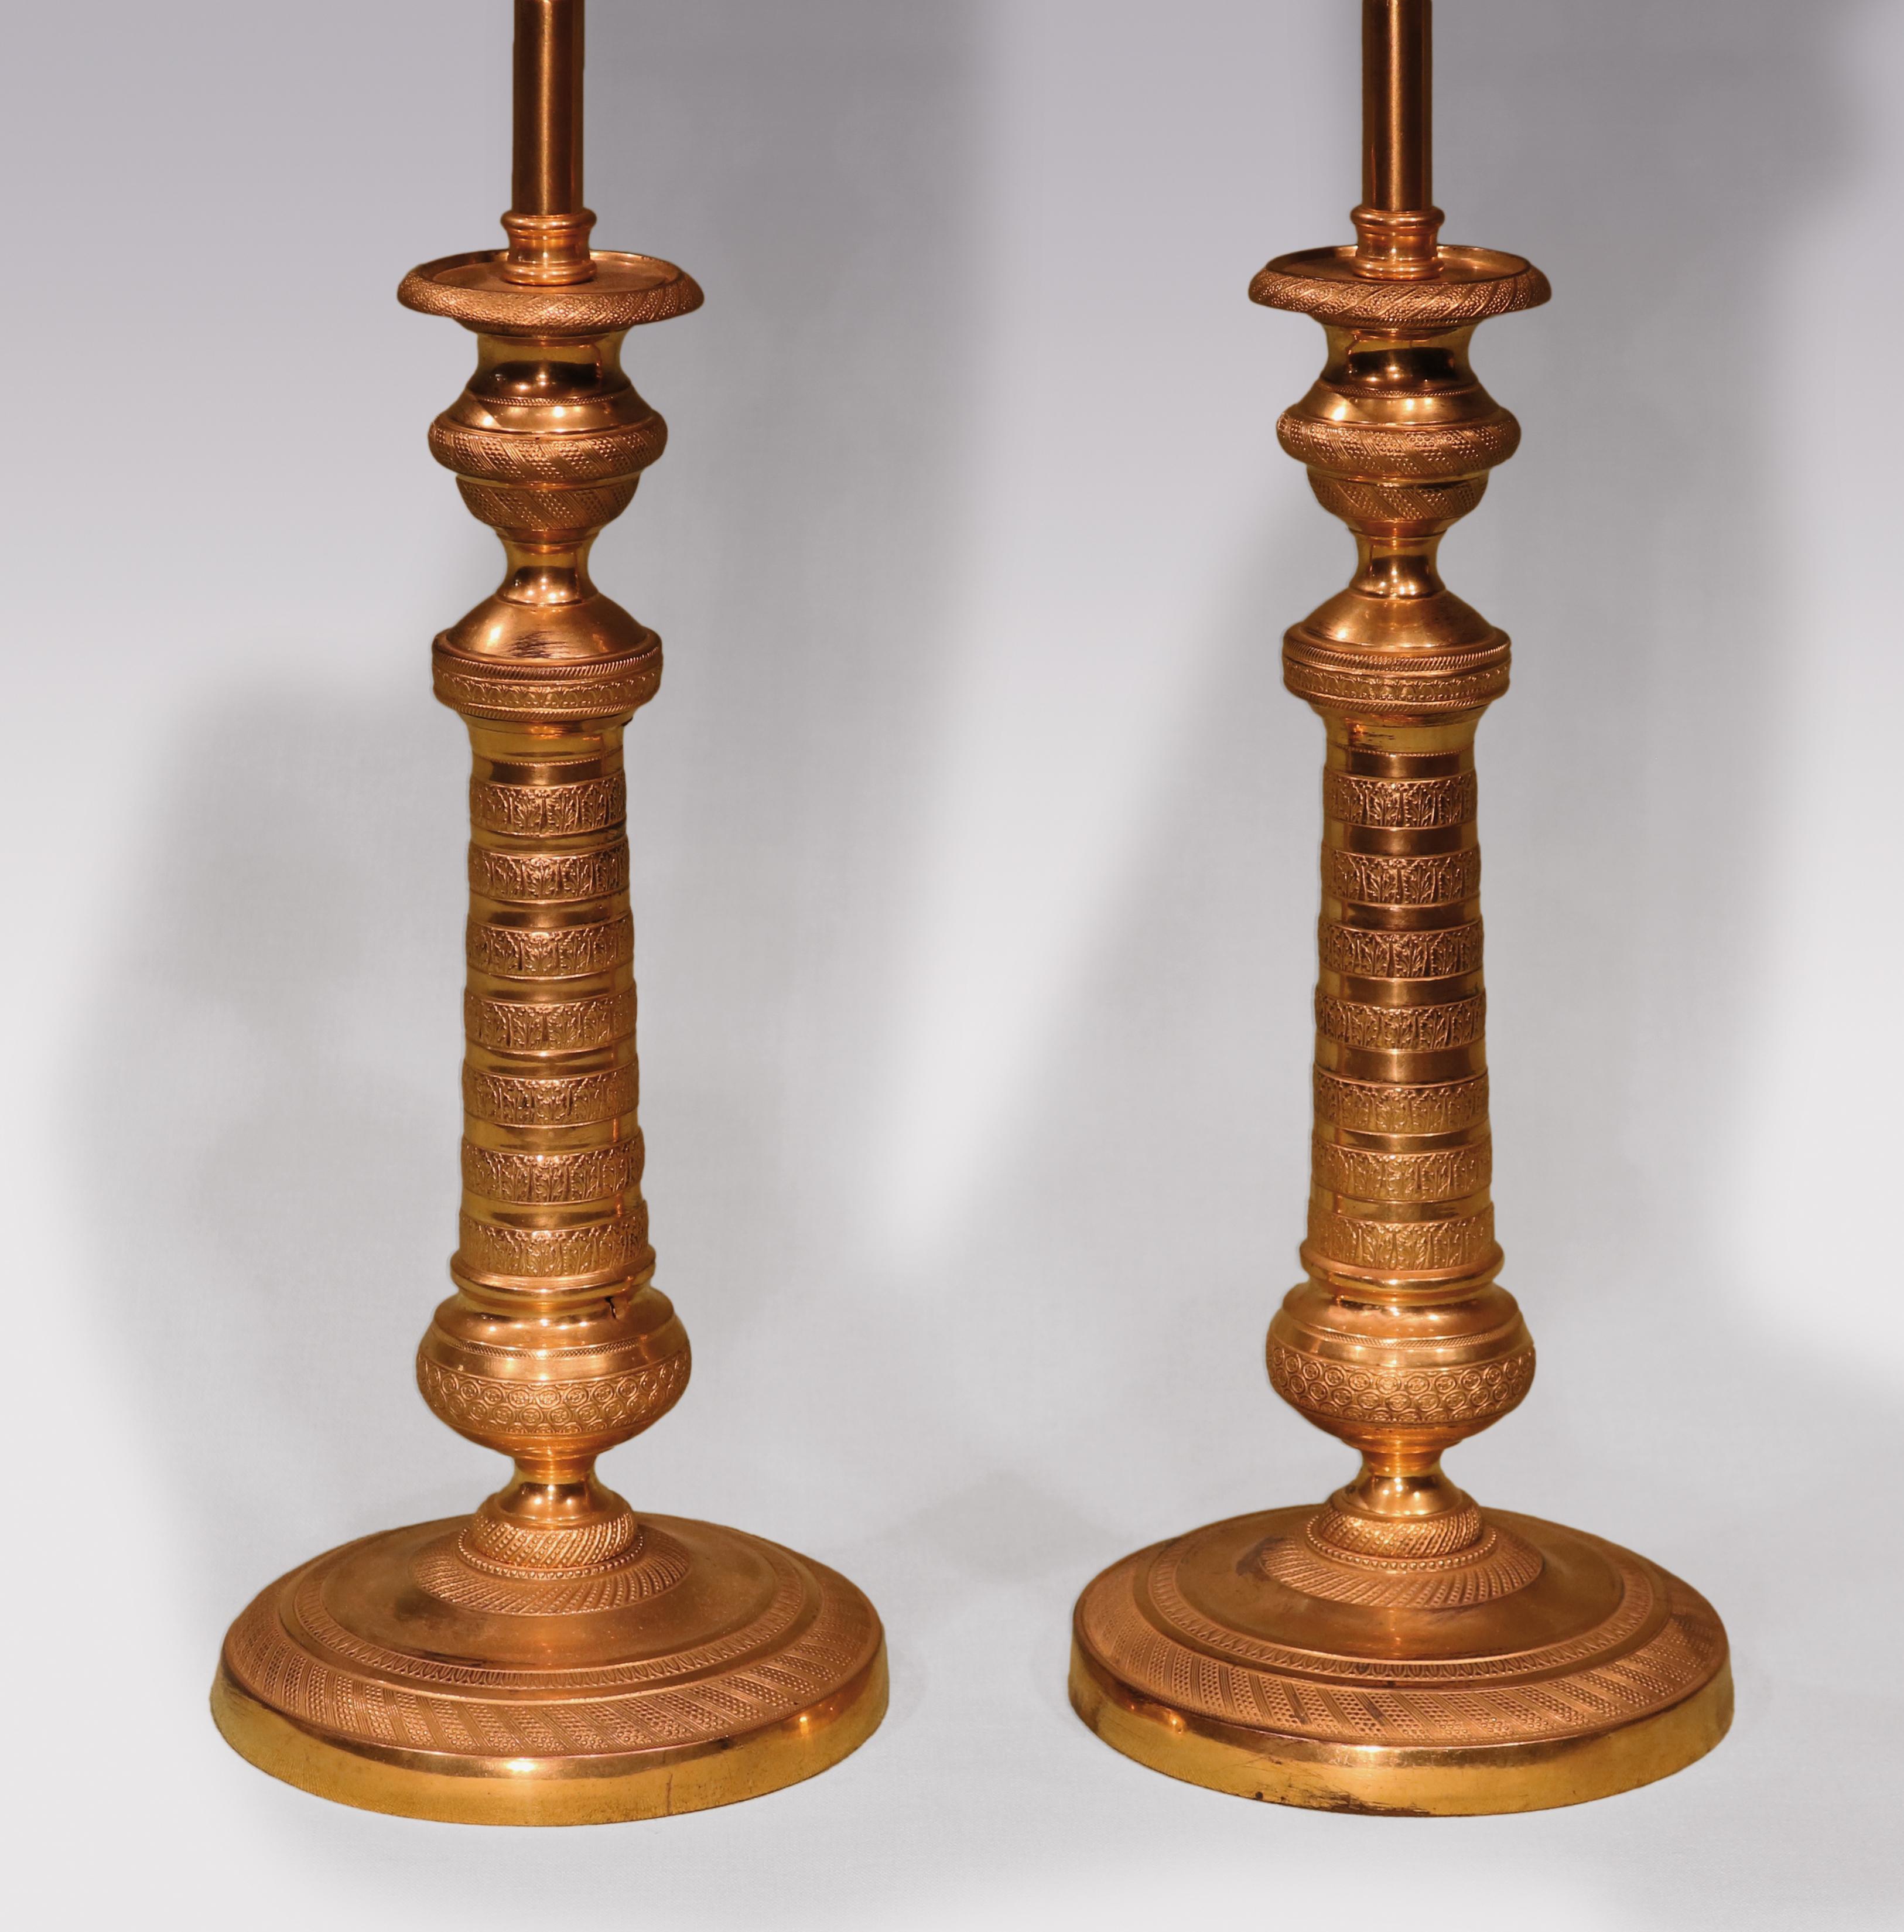 Ein Paar Ormolu-Kerzenhalter aus dem frühen 19. Jahrhundert, durchgehend fein gedrechselt, mit urnenförmigen Tüllen über spitz zulaufenden Stielen, die auf runden Basen enden. (Jetzt umgewandelt in Lampen)

Maße: Höhe des Leuchters 27 cm (10,5